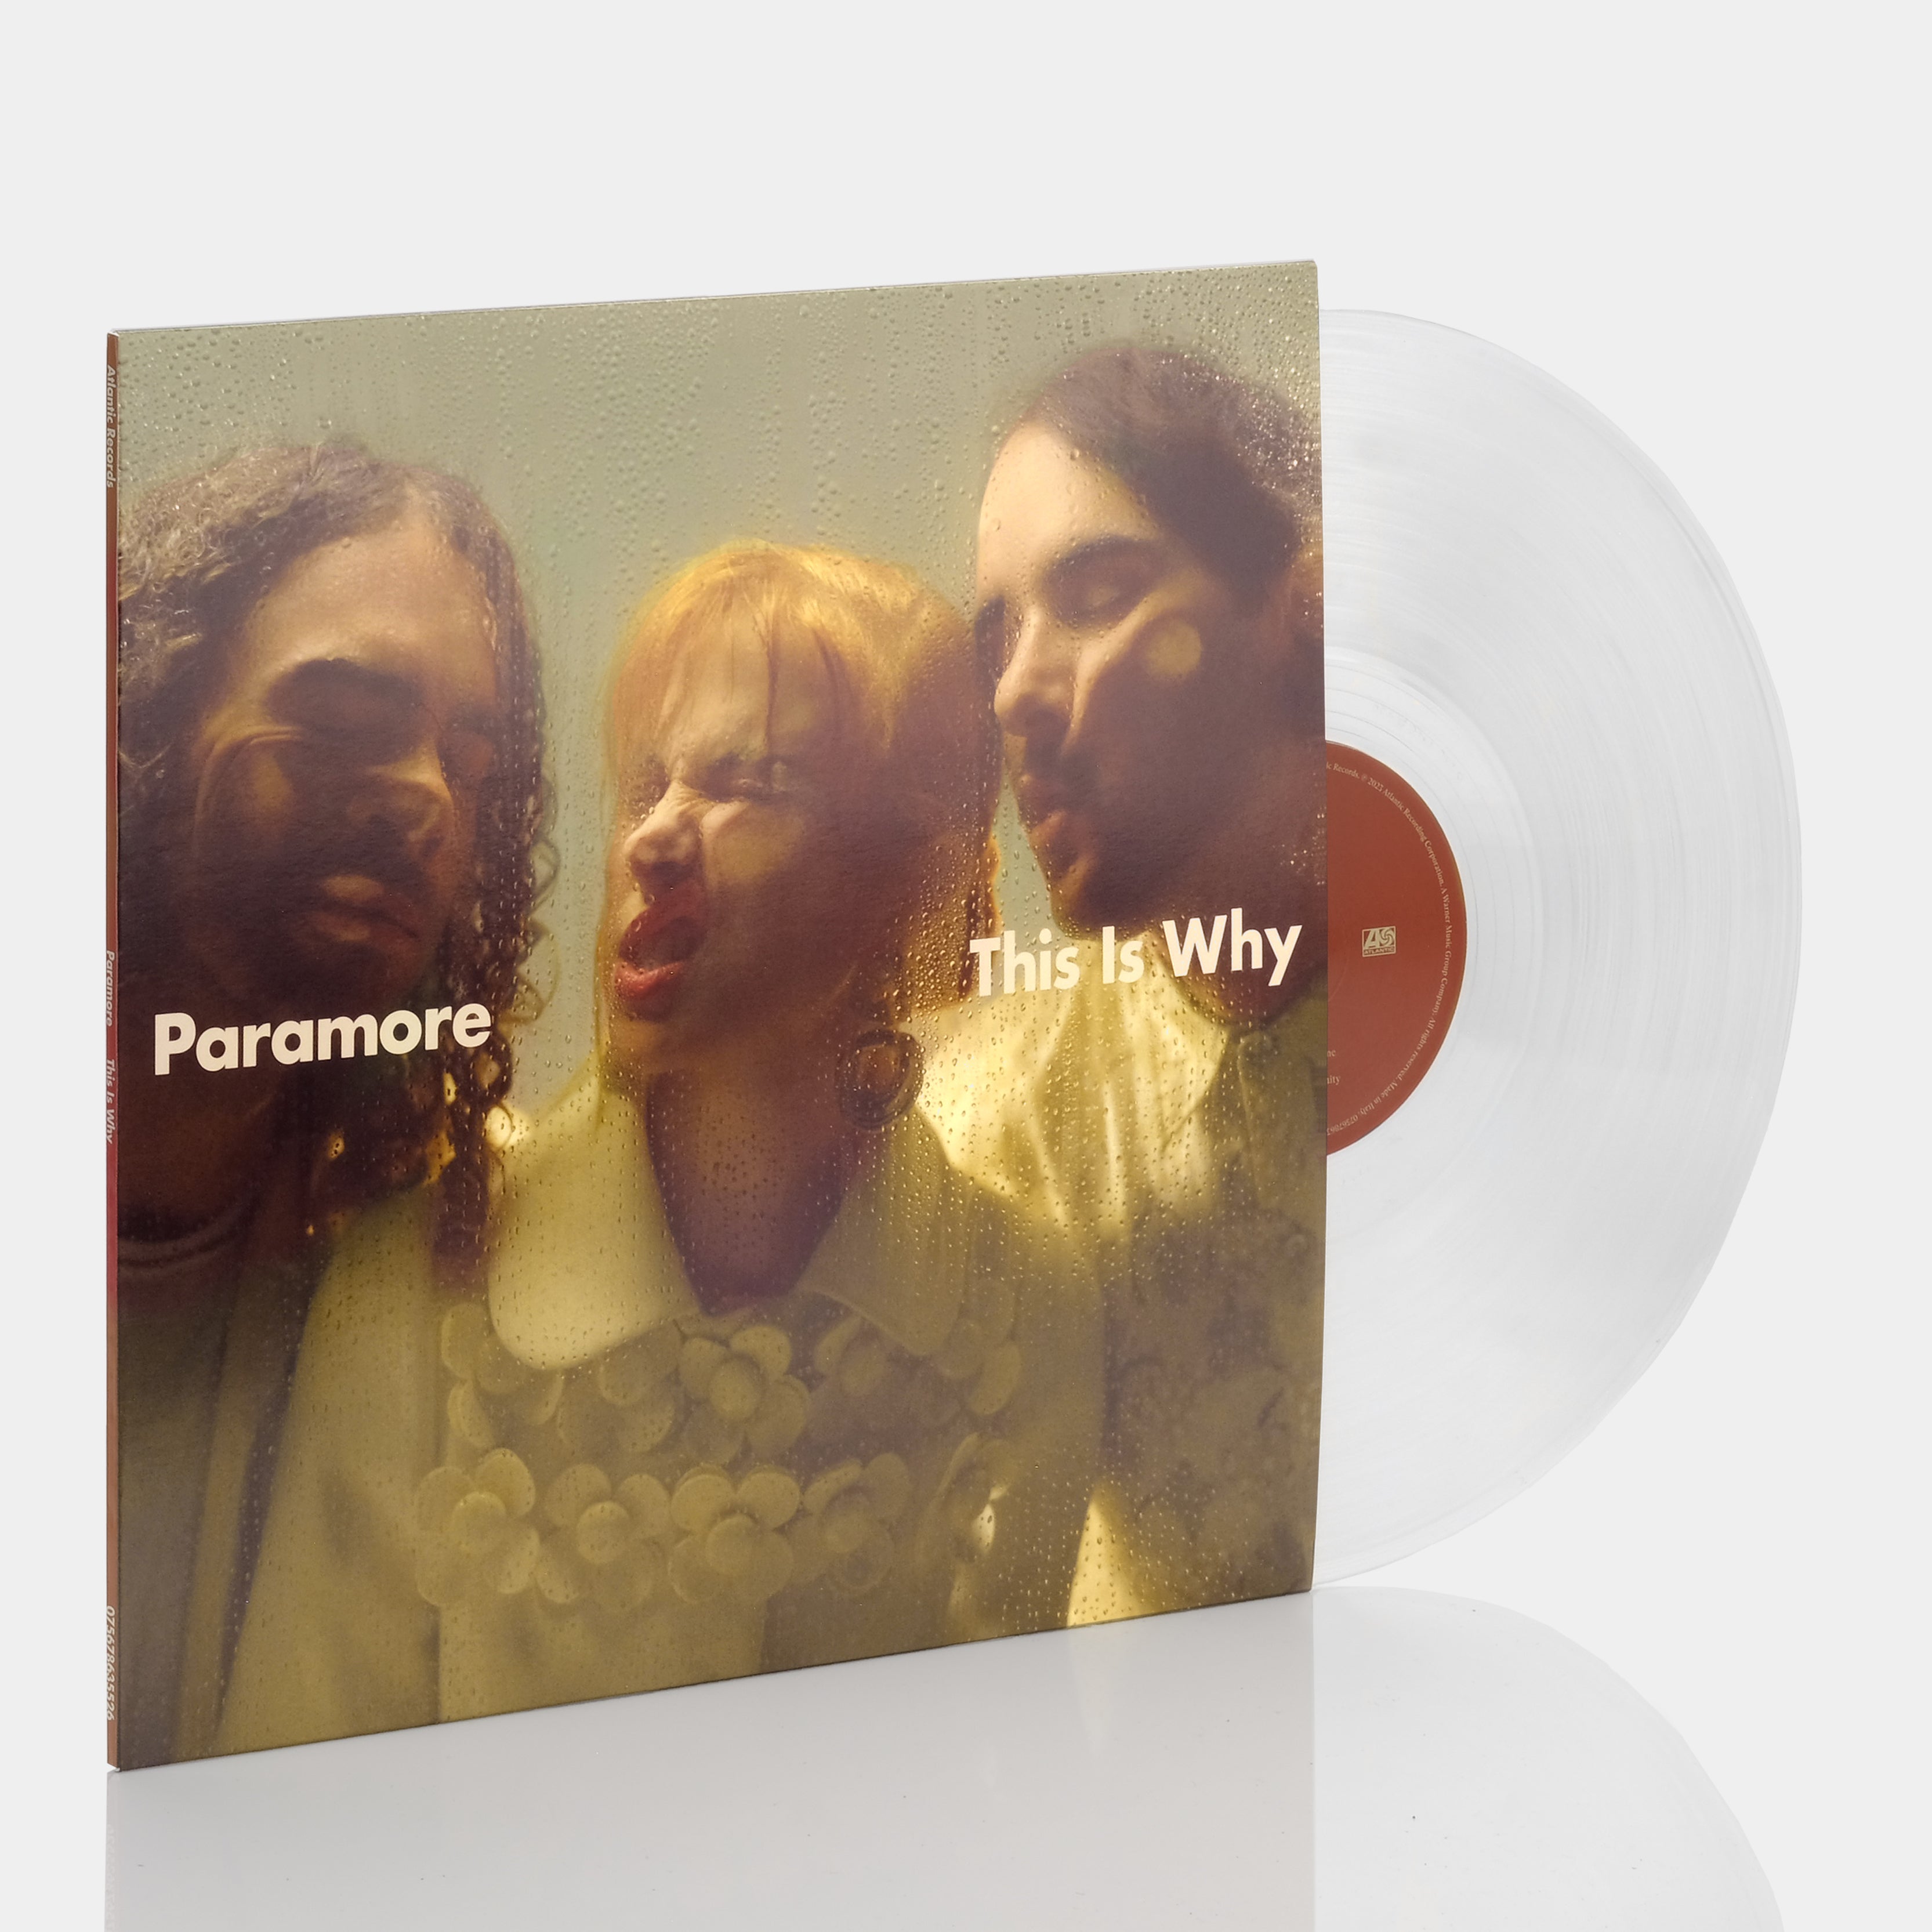 Paramore s/t Paramore 2 x LP - Vinyl Album - SEALED NEW RECORD